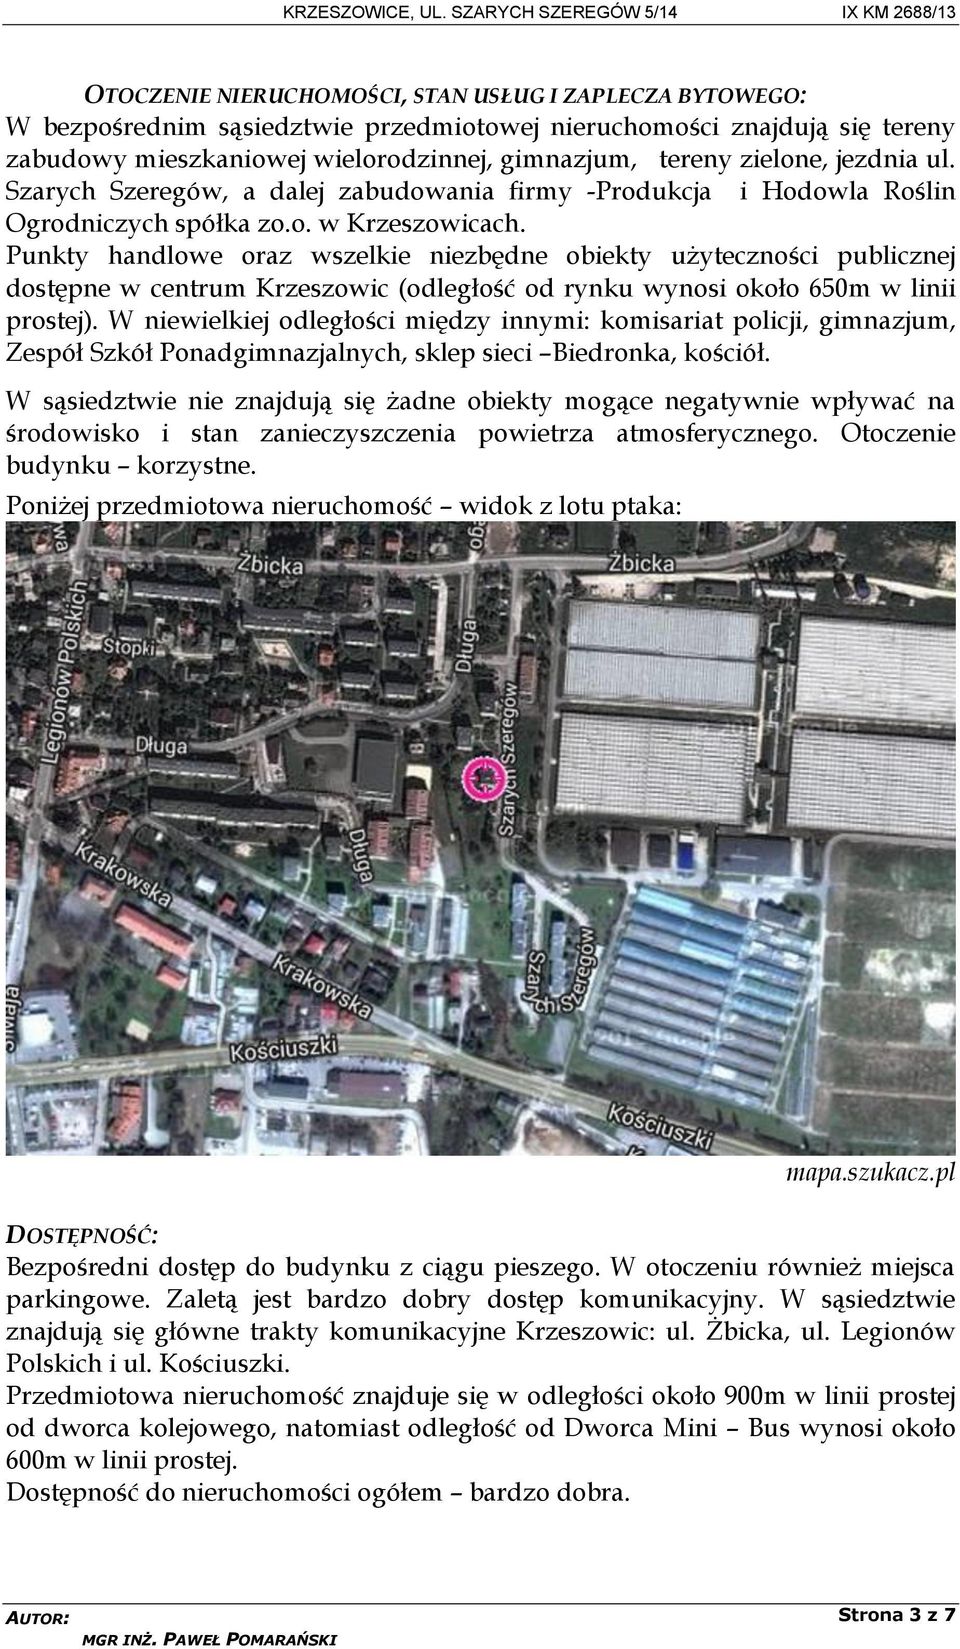 Punkty handlowe oraz wszelkie niezbędne obiekty użyteczności publicznej dostępne w centrum Krzeszowic (odległość od rynku wynosi około 650m w linii prostej).